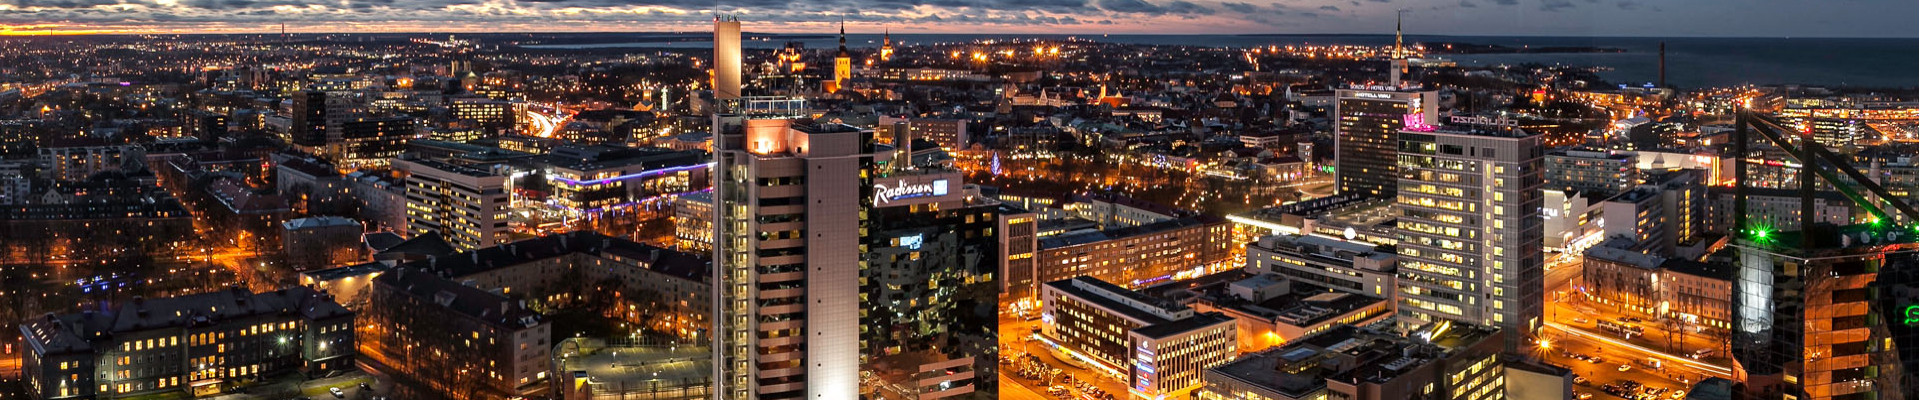 Kinnisvarabüroo Uus Maa OÜ tegutseb Eesti kinnisvaraturul aastast 1992. Meie teenuste hulka kuulub elukondliku- ja ärikinnisvara müük, ost ja üür.